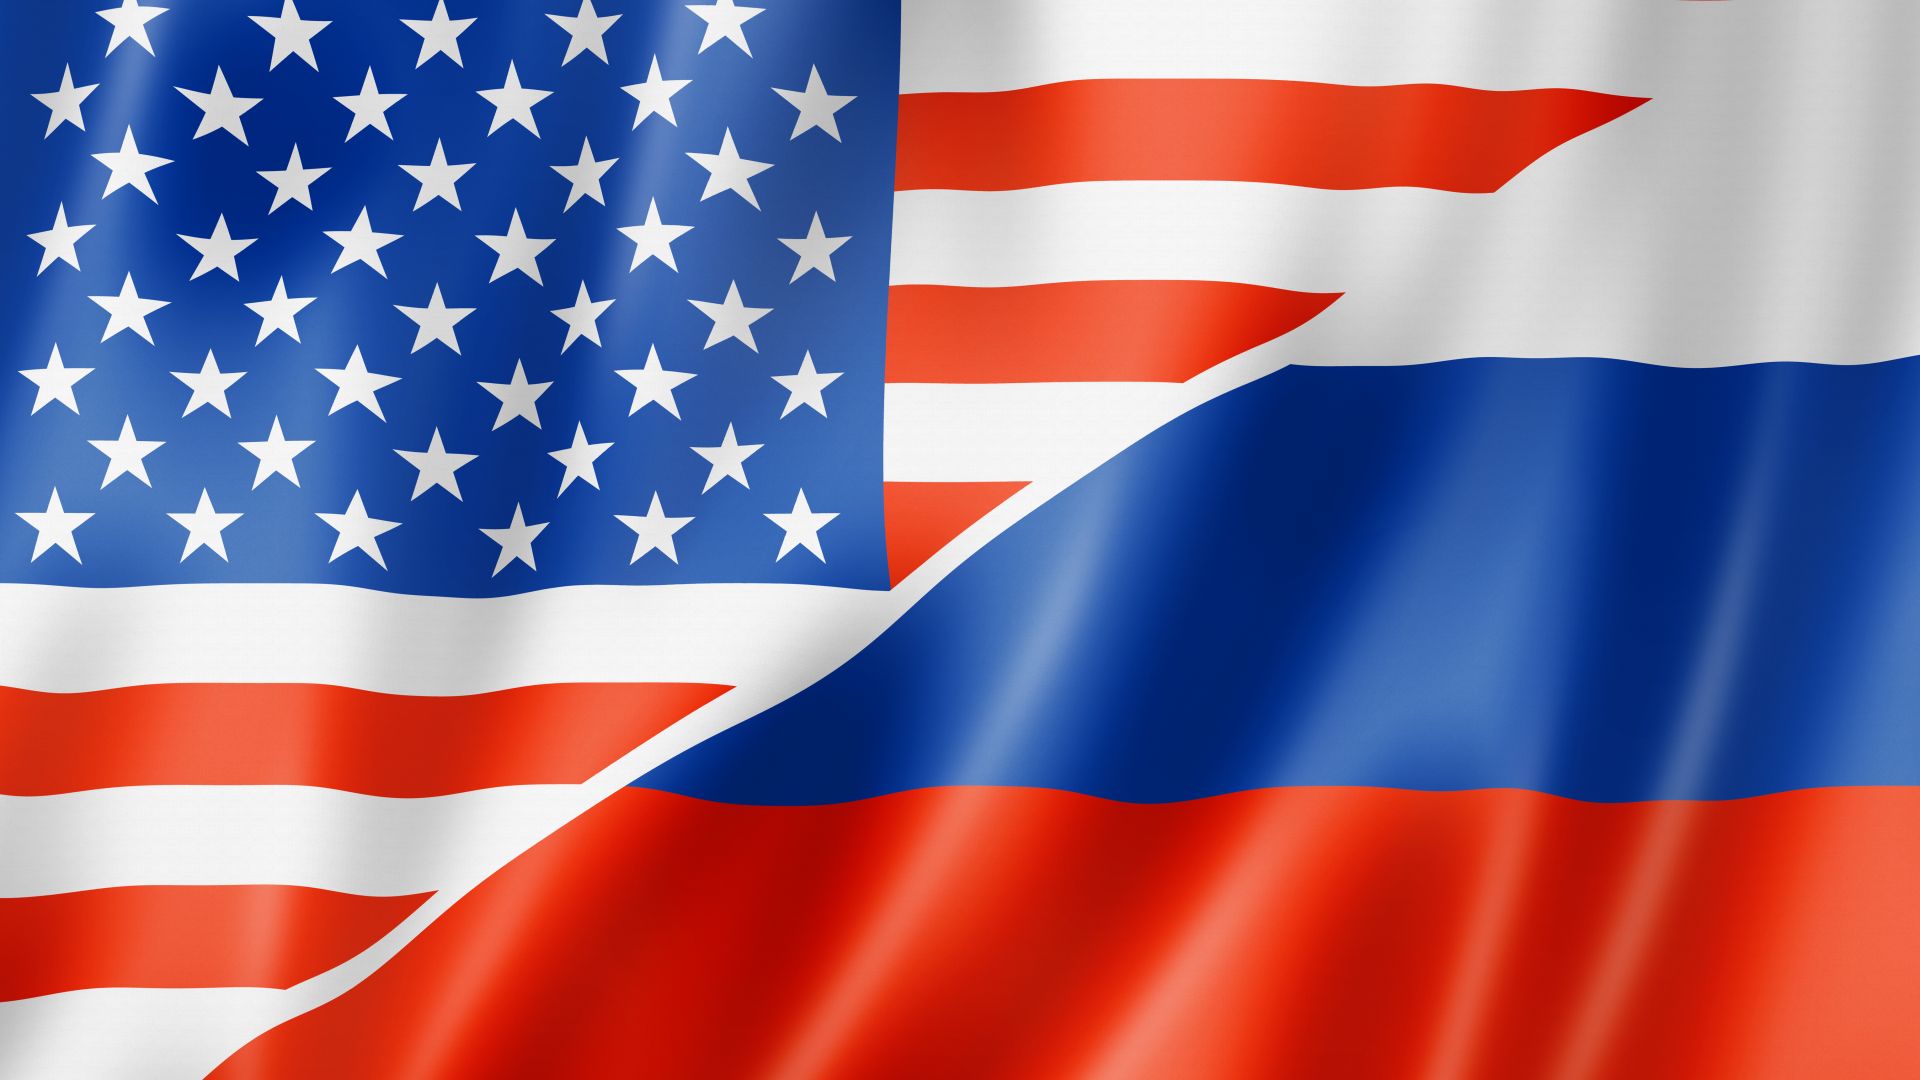 Високопоставени дипломати от САЩ и Русия се срещнаха във финландската